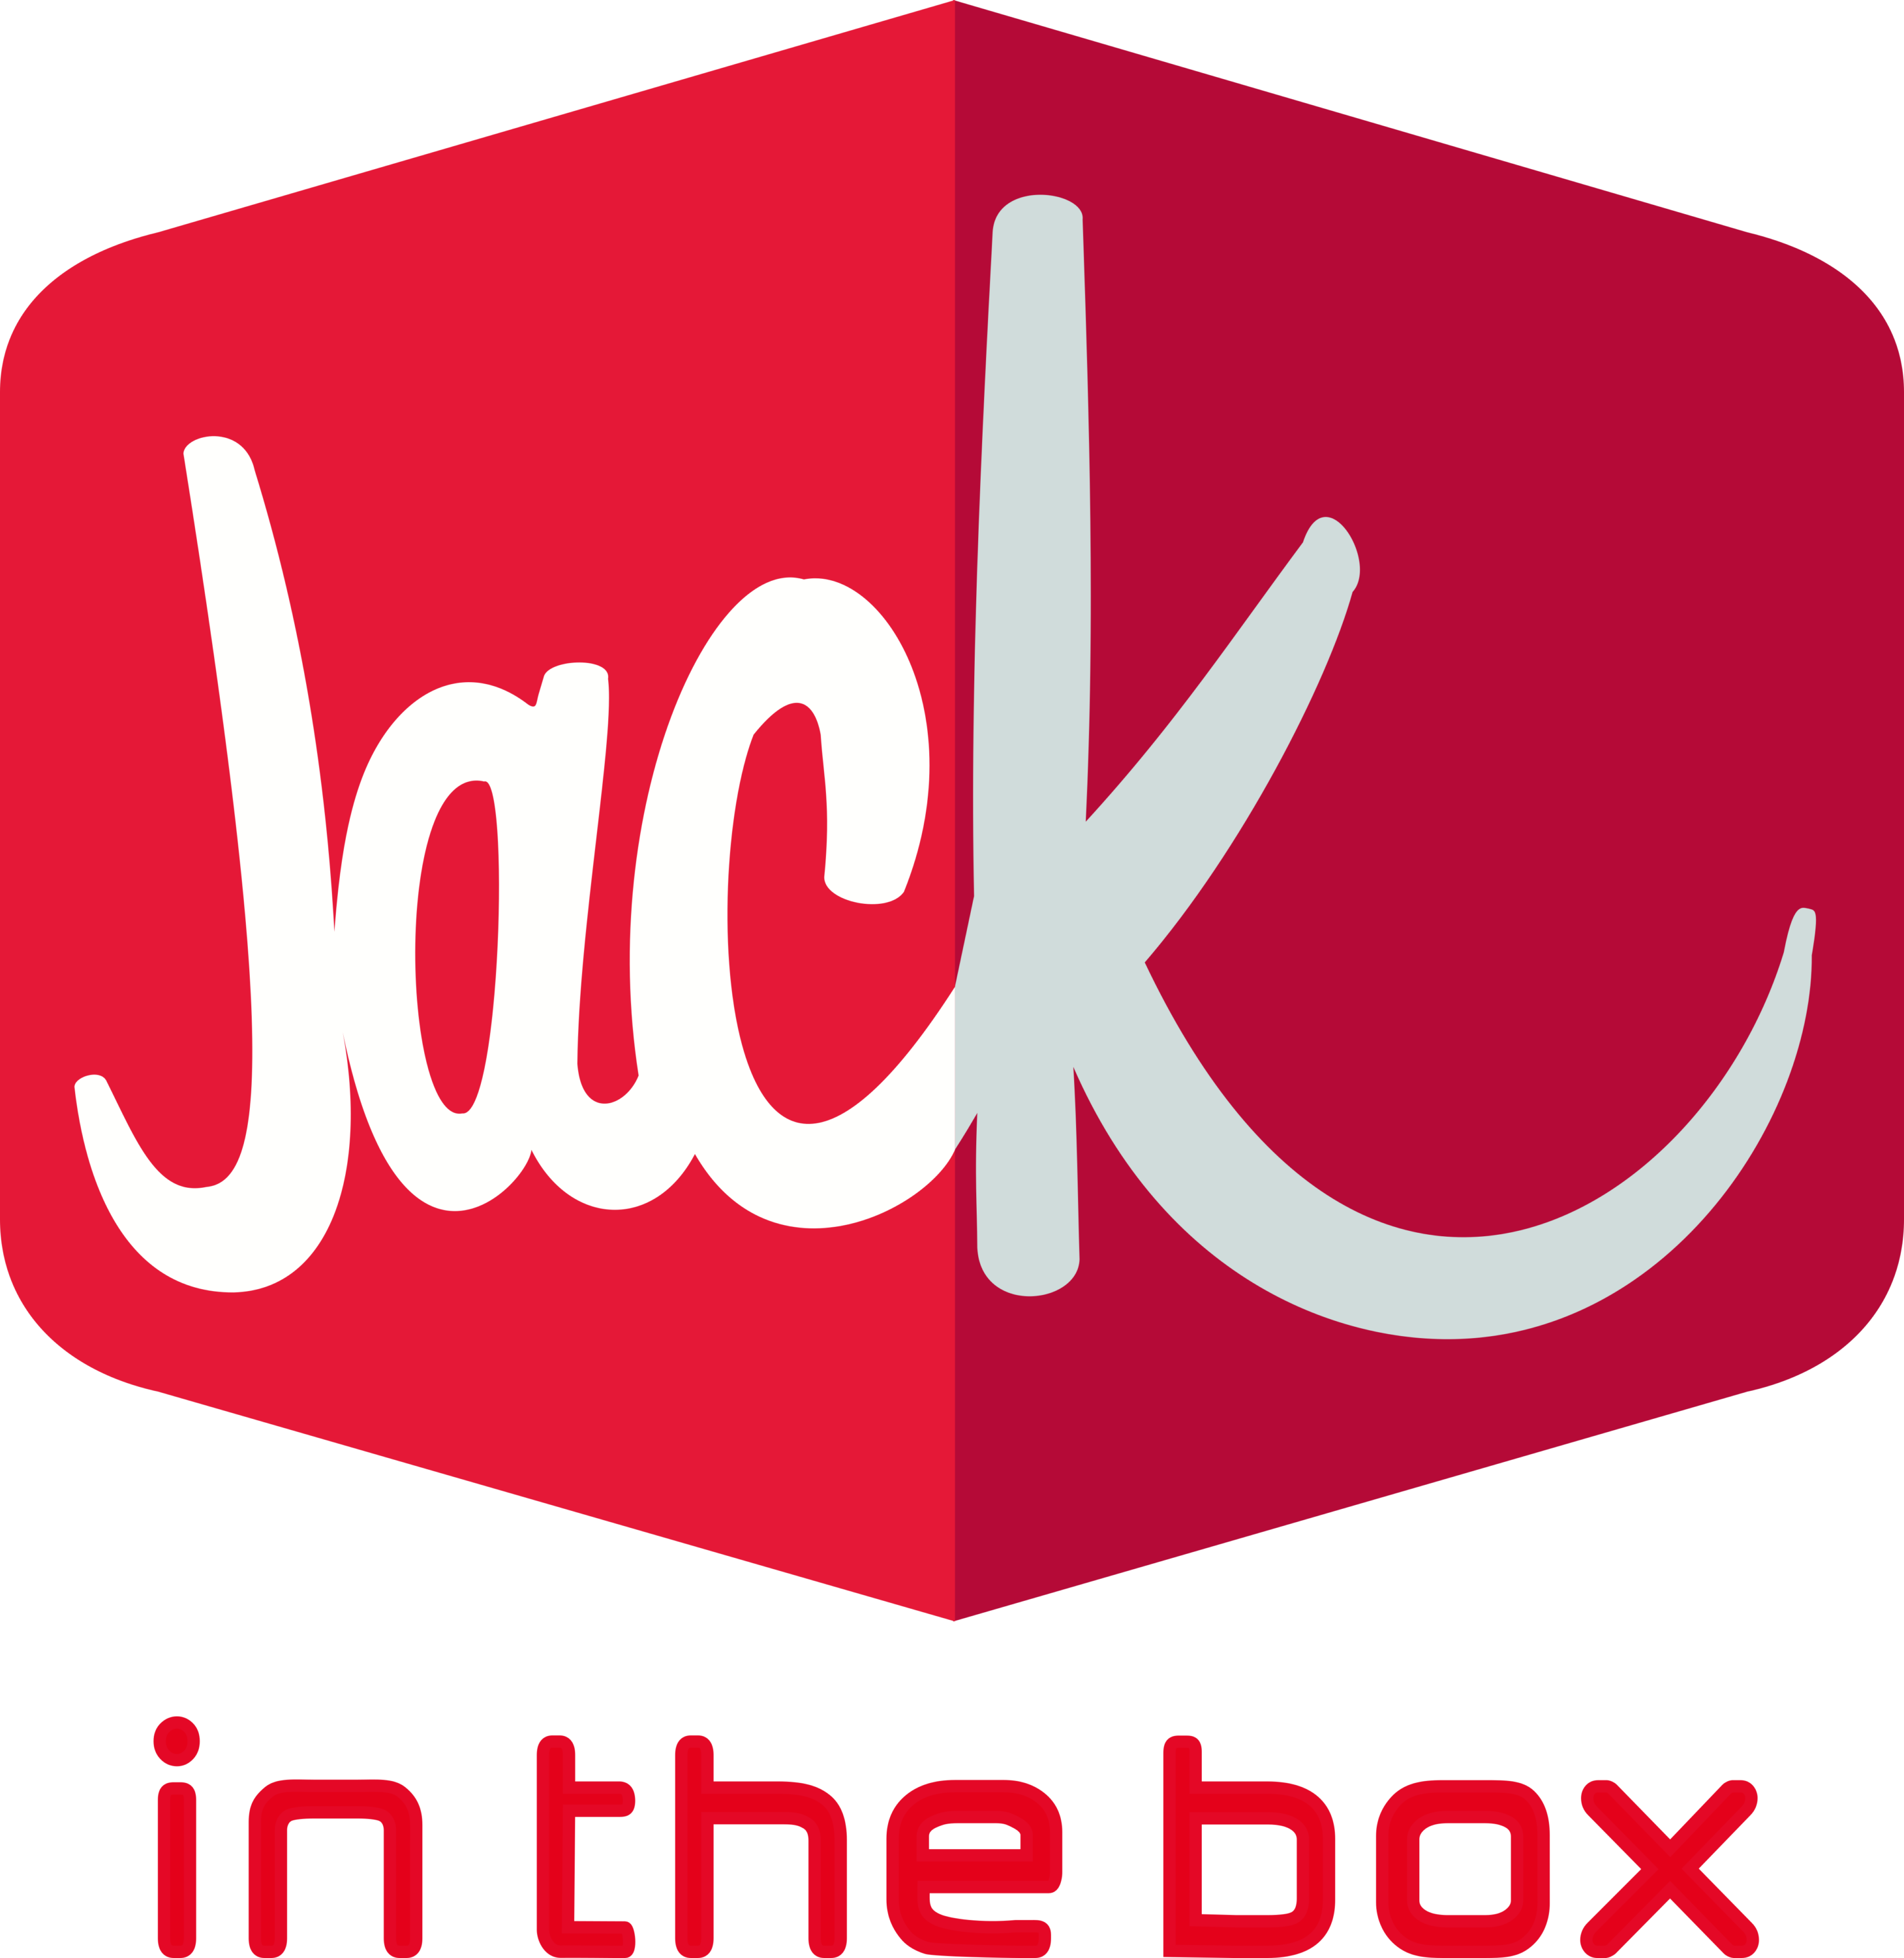 Jack in the Box Logo